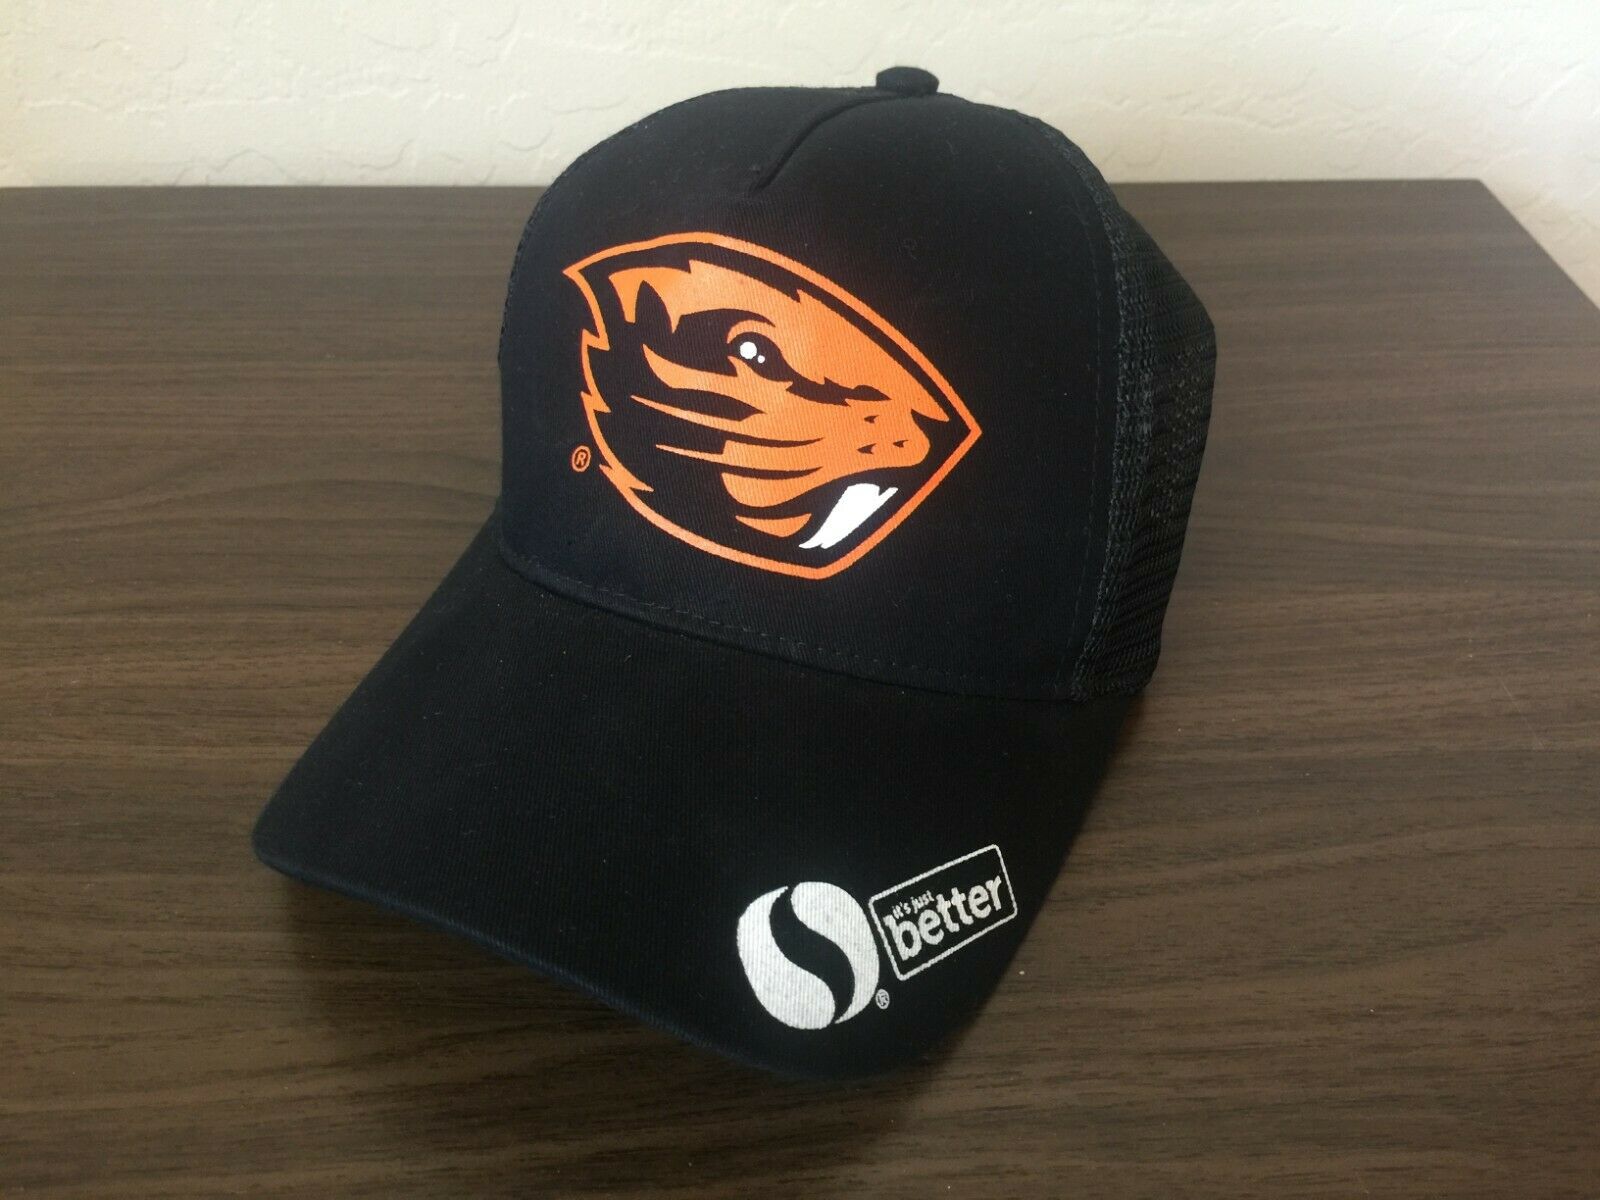 Beavers NCAA tournament gear